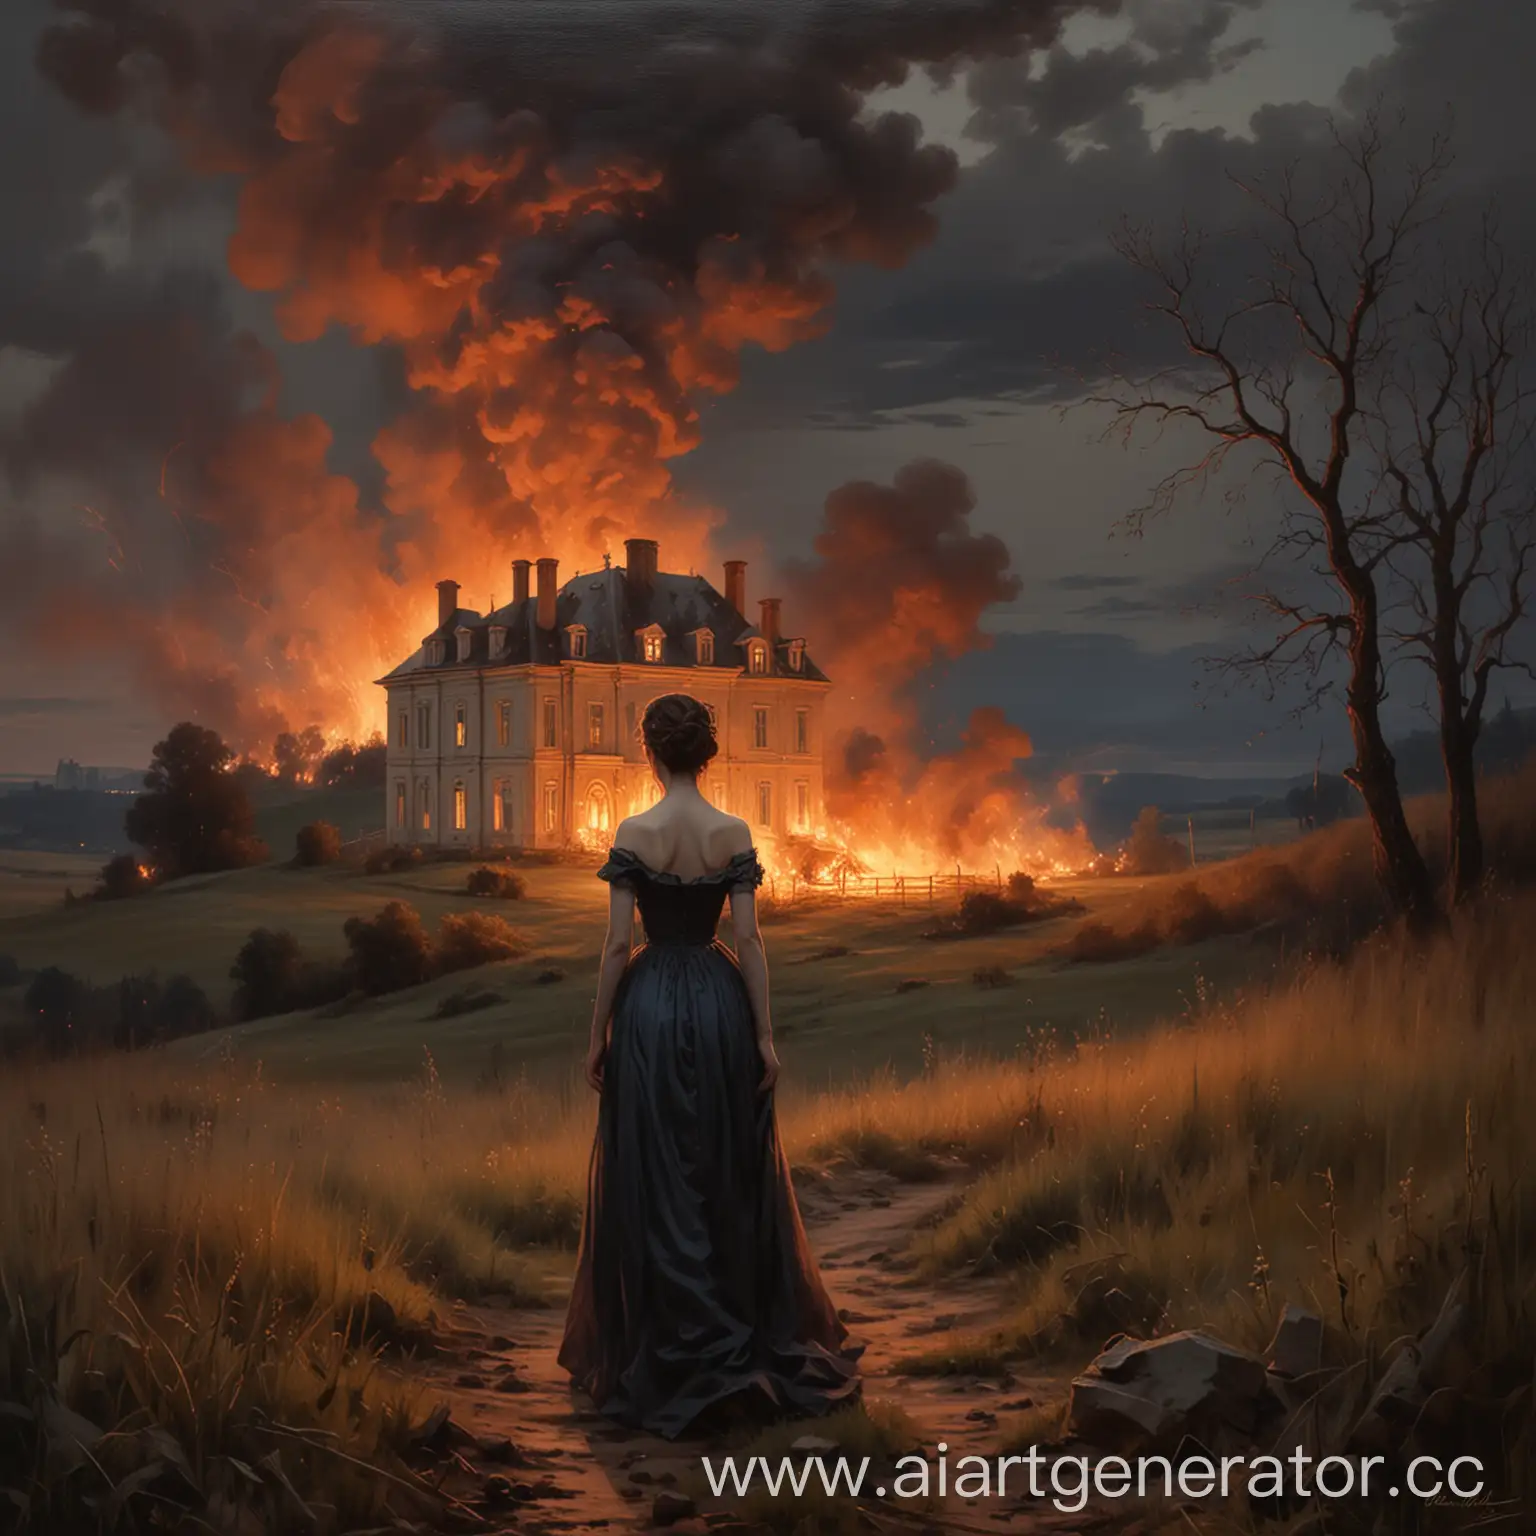 Картина маслом в стиле классицизм, сумерки, горит поместье в поле на холме, женская фигура в ужасе смотрит на пожар, зернистость